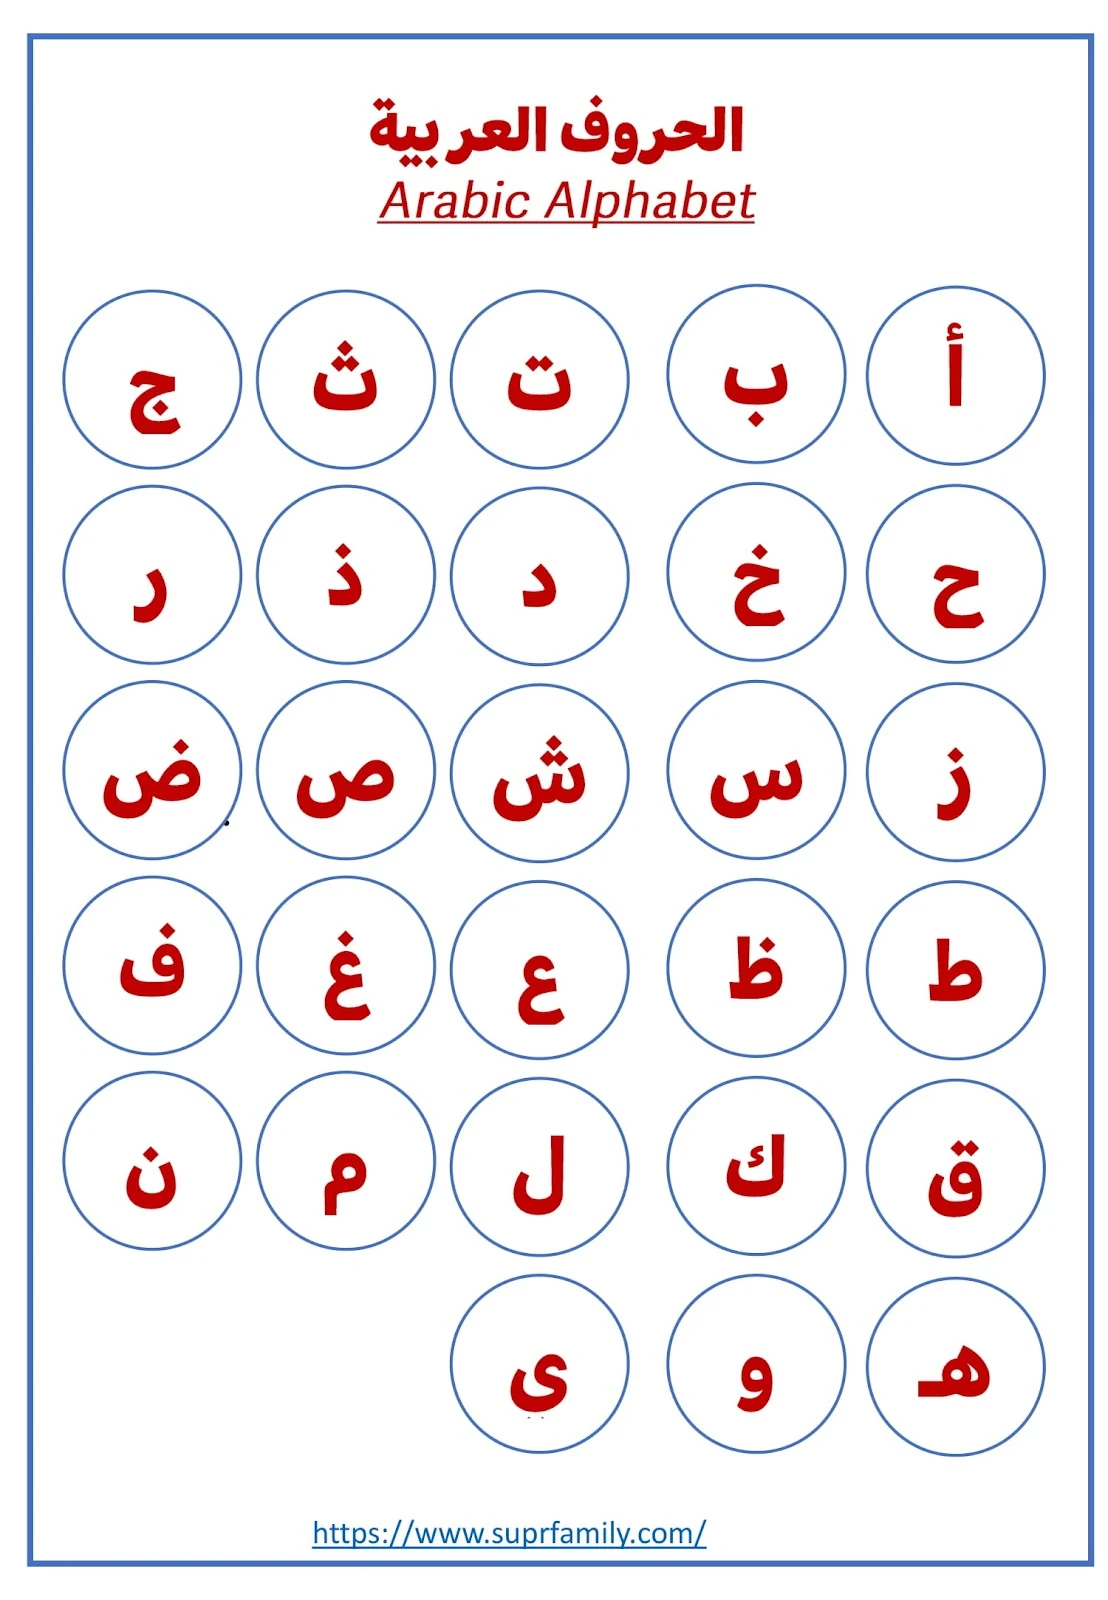 الحروف العربية الهجائية كاملة جاهزة للطباعة مجانا pdf تحميل مباشر